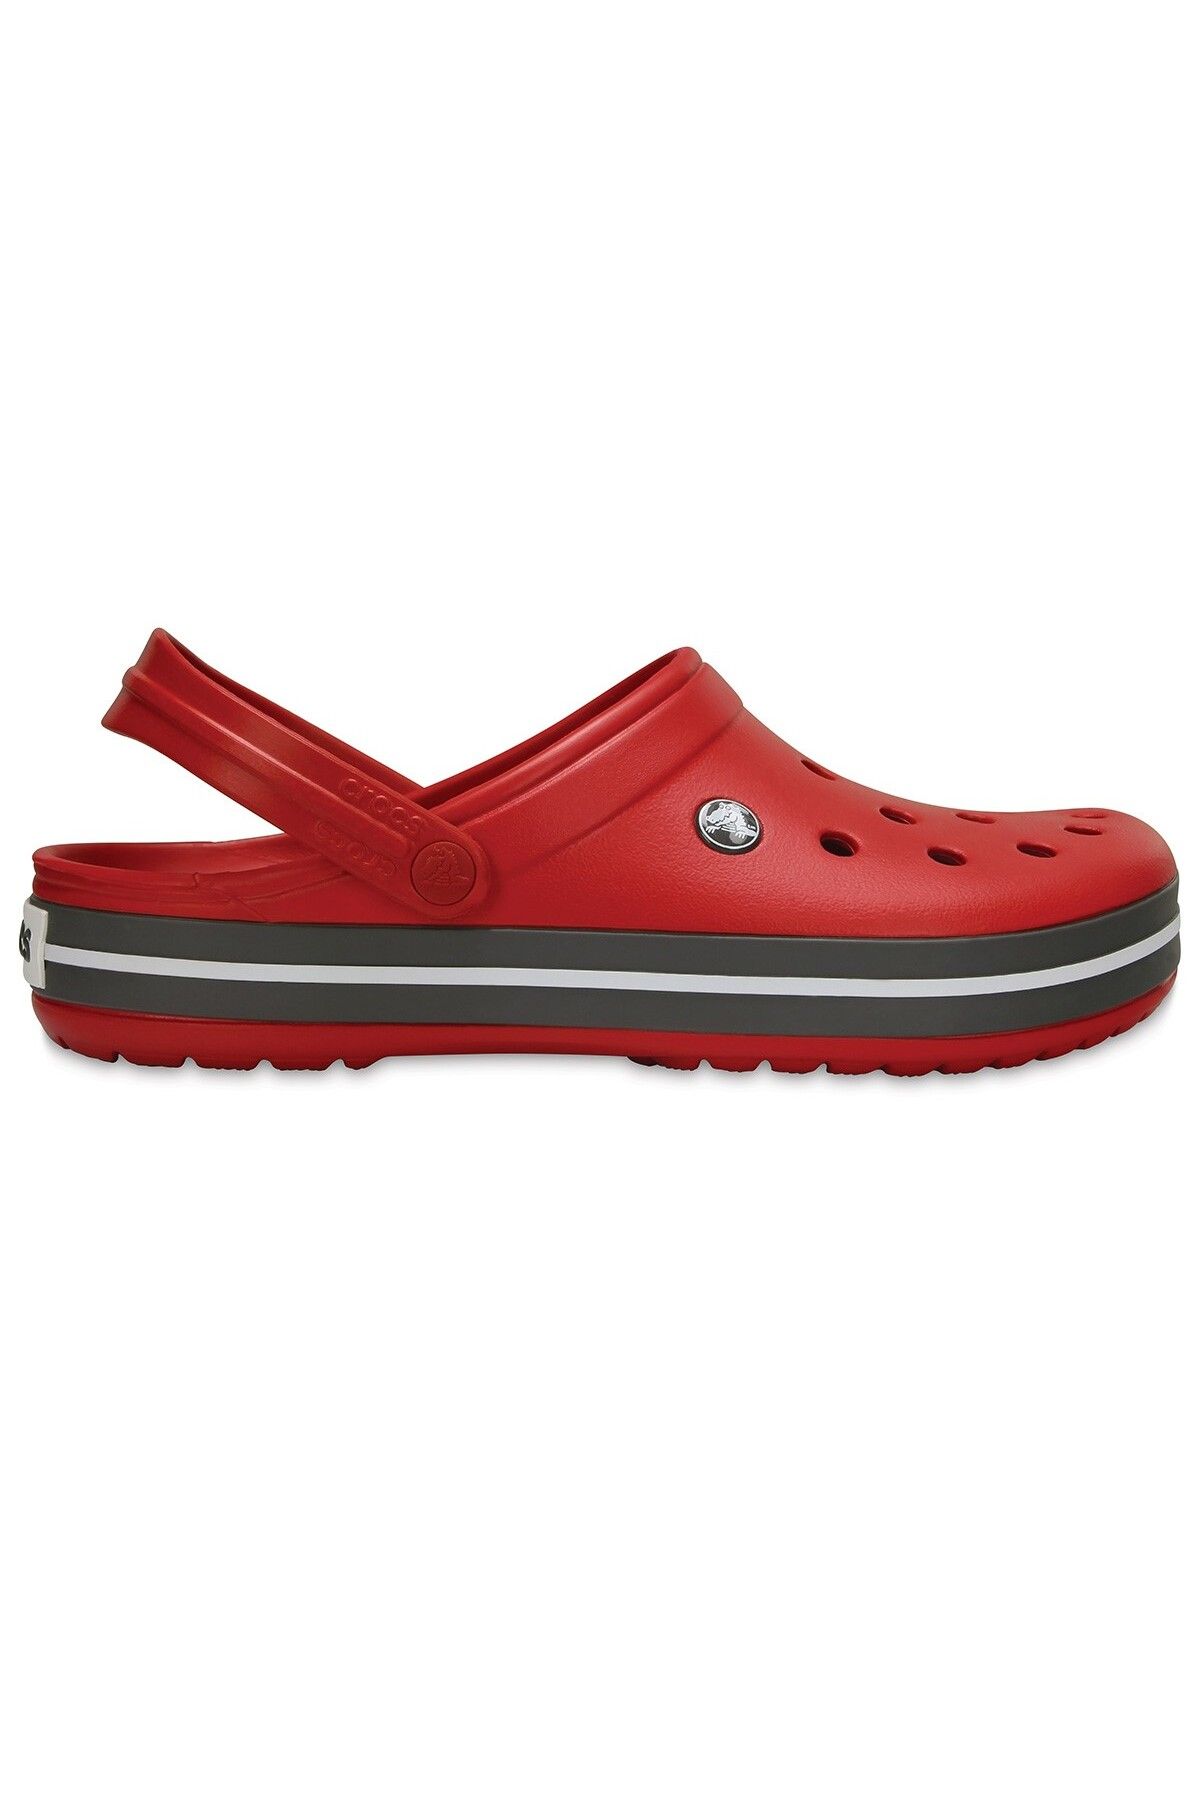 Crocs Kadın Sandalet 11016